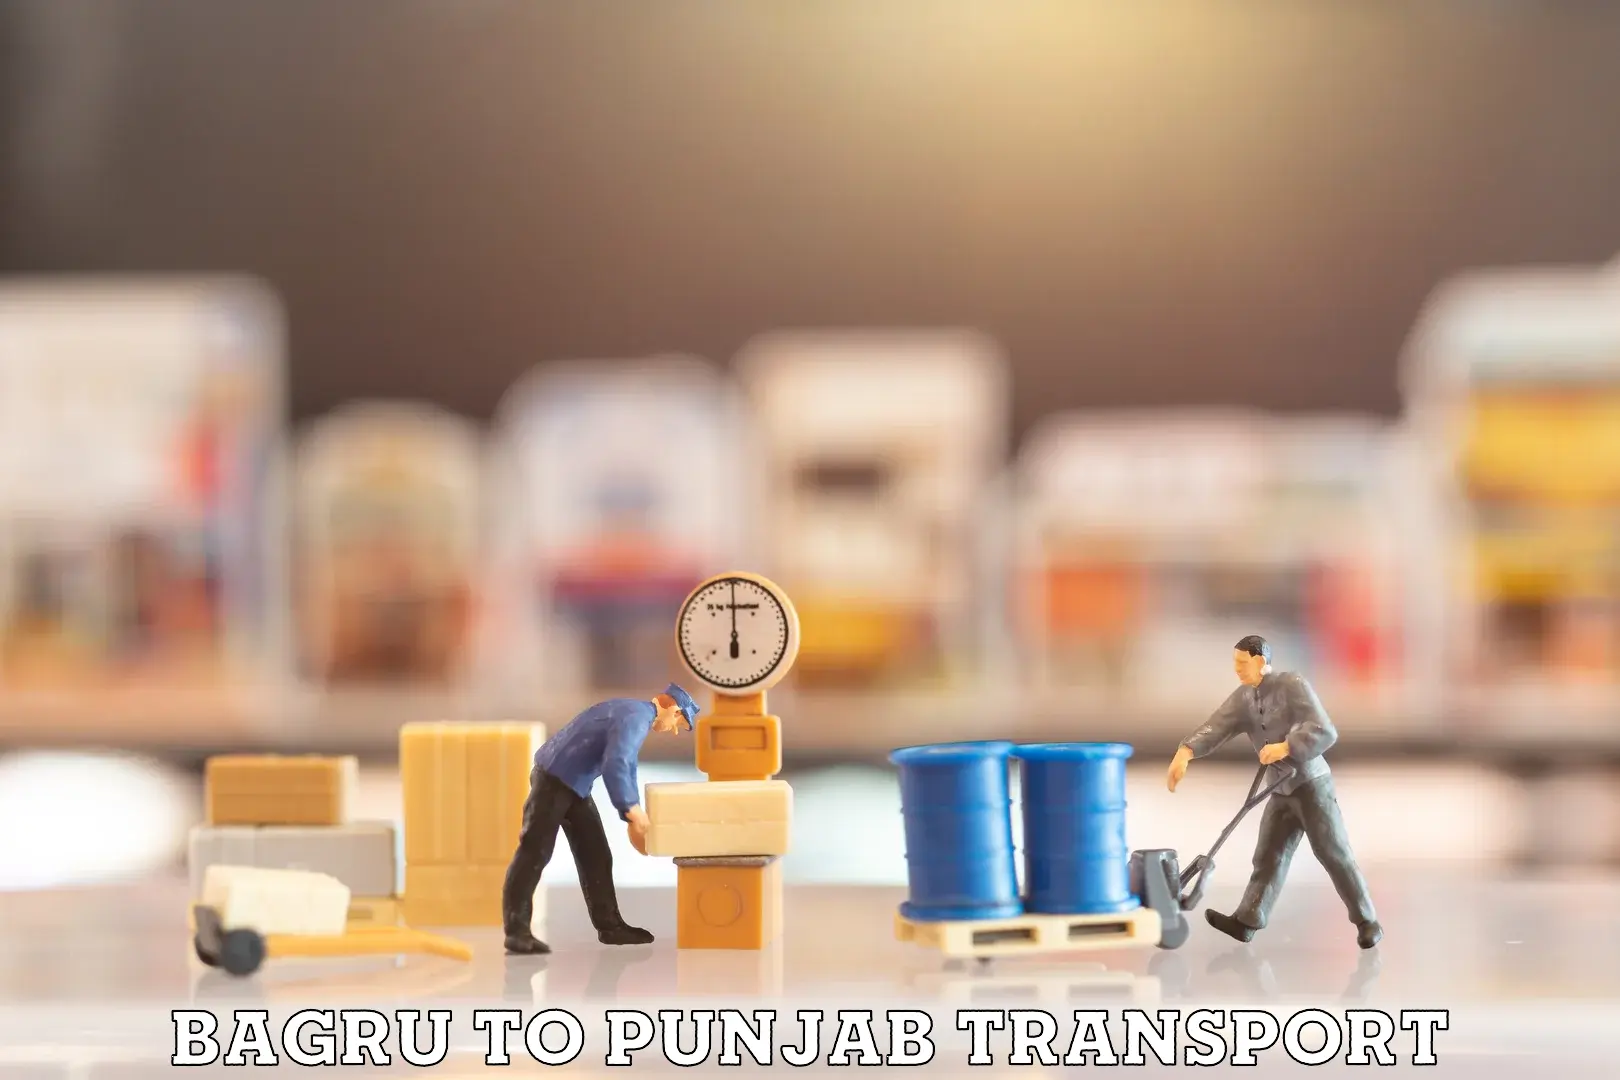 Commercial transport service Bagru to Punjab